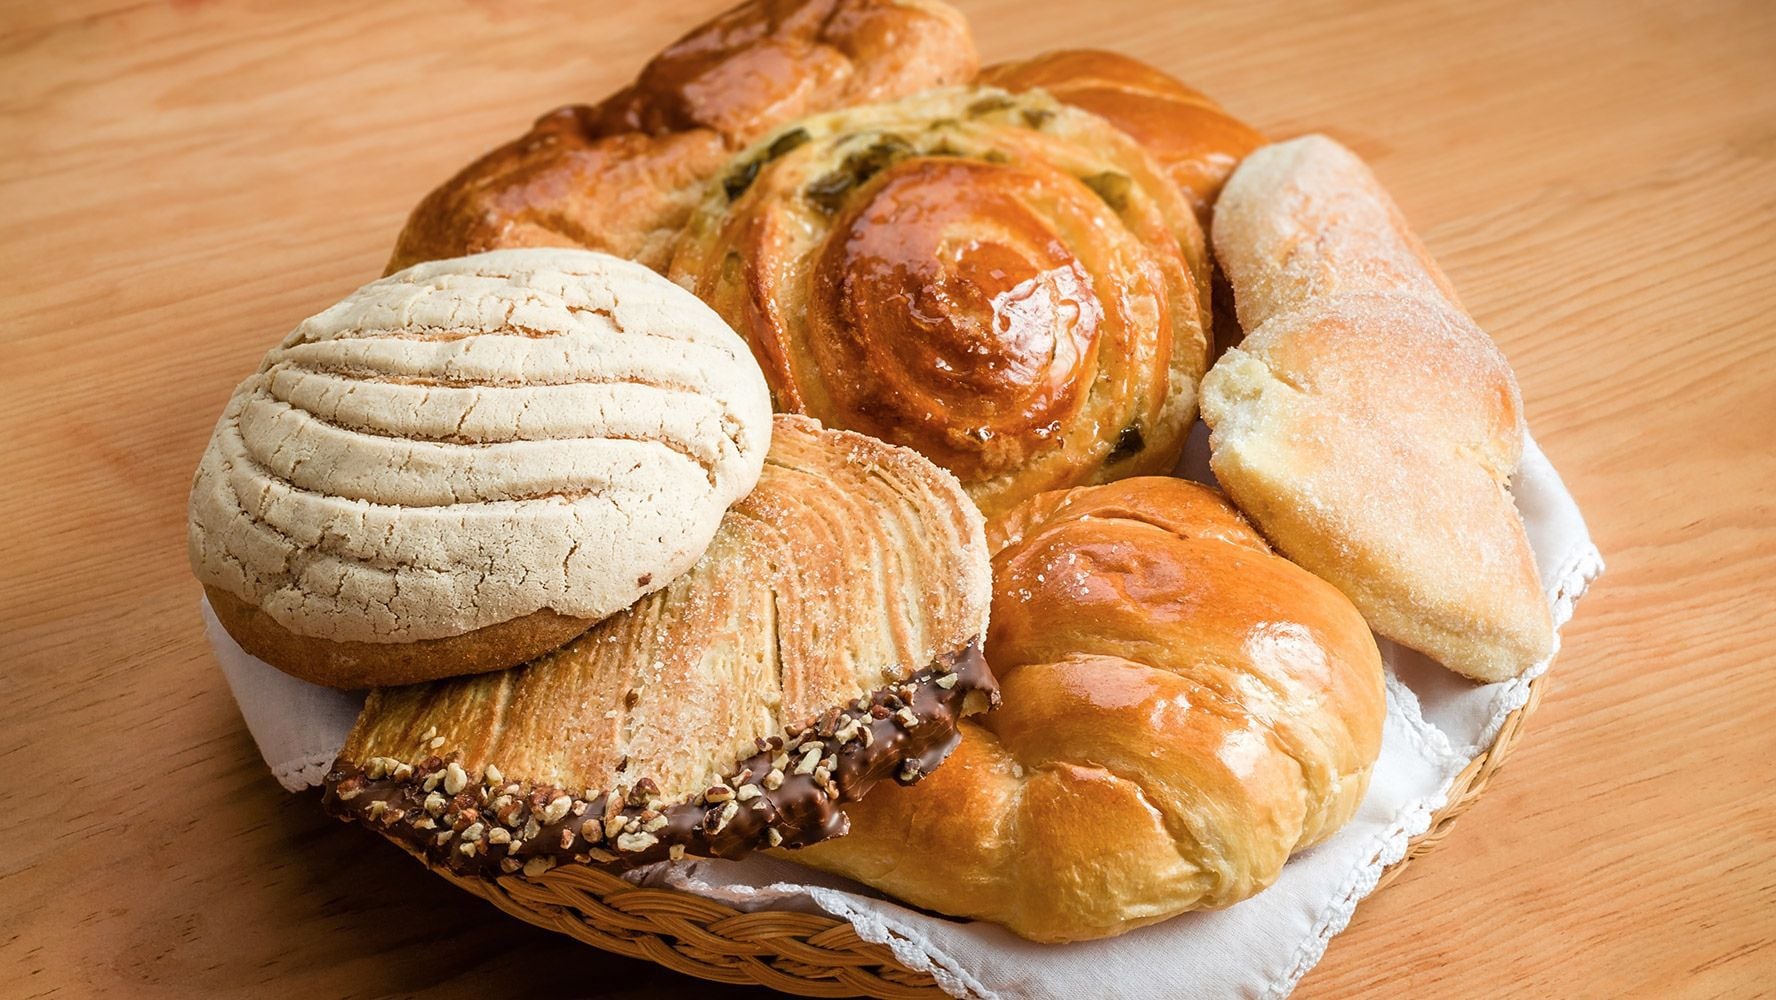 Las conchas de vainilla son un tipo de pan dulce popular. (Foto: Shutterstock)